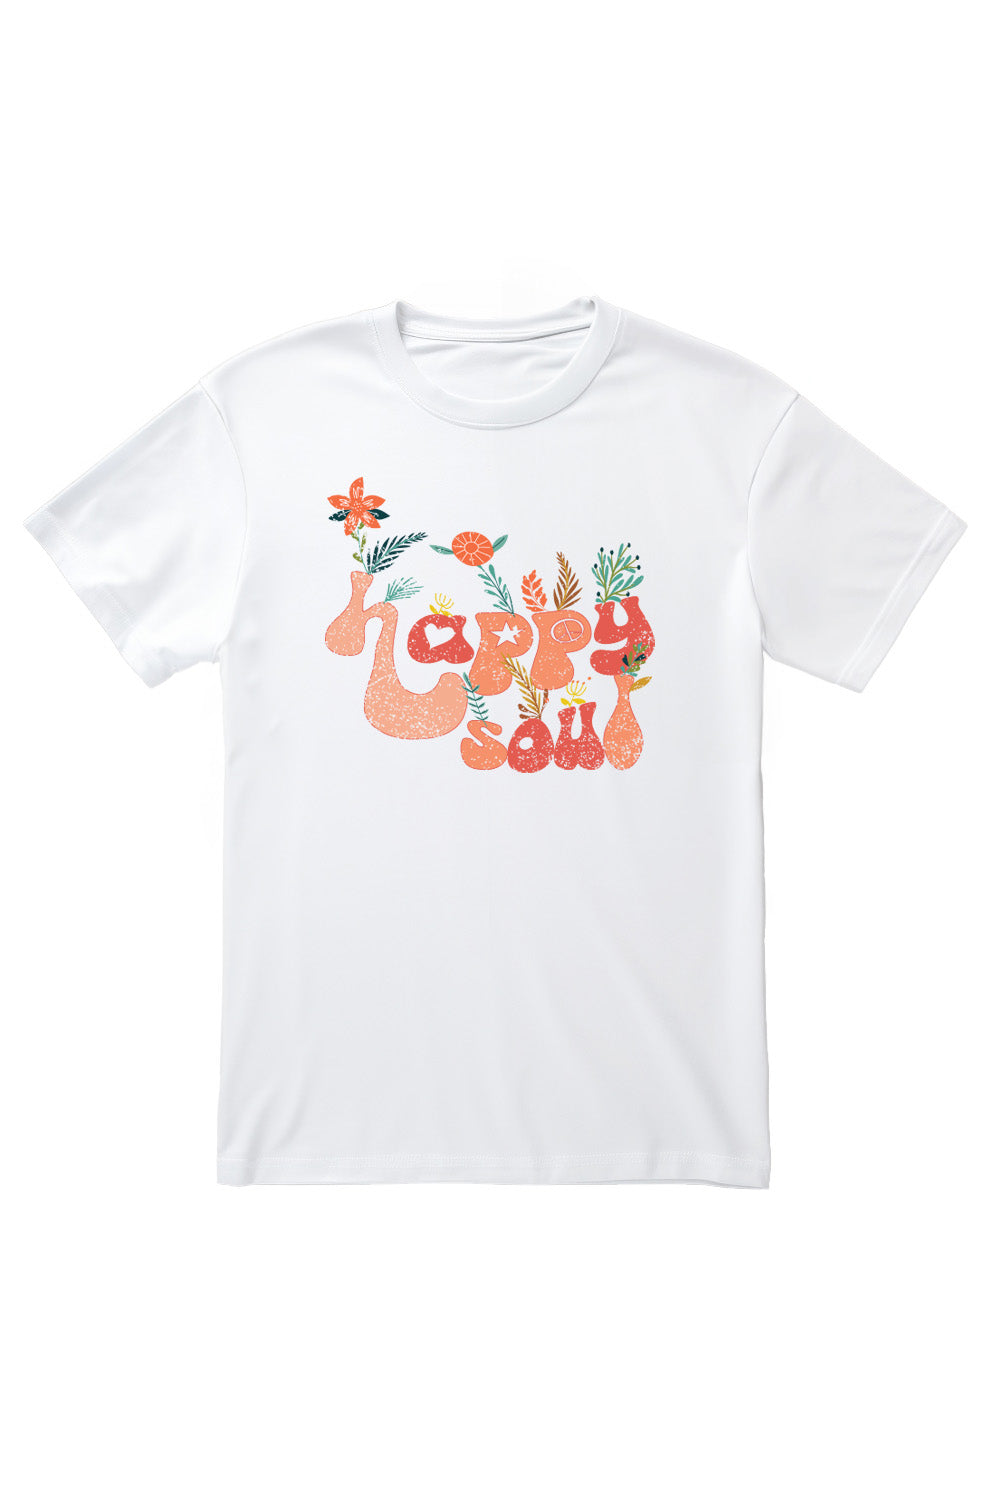 Happy Soul T-Shirt in White (Custom Packs)